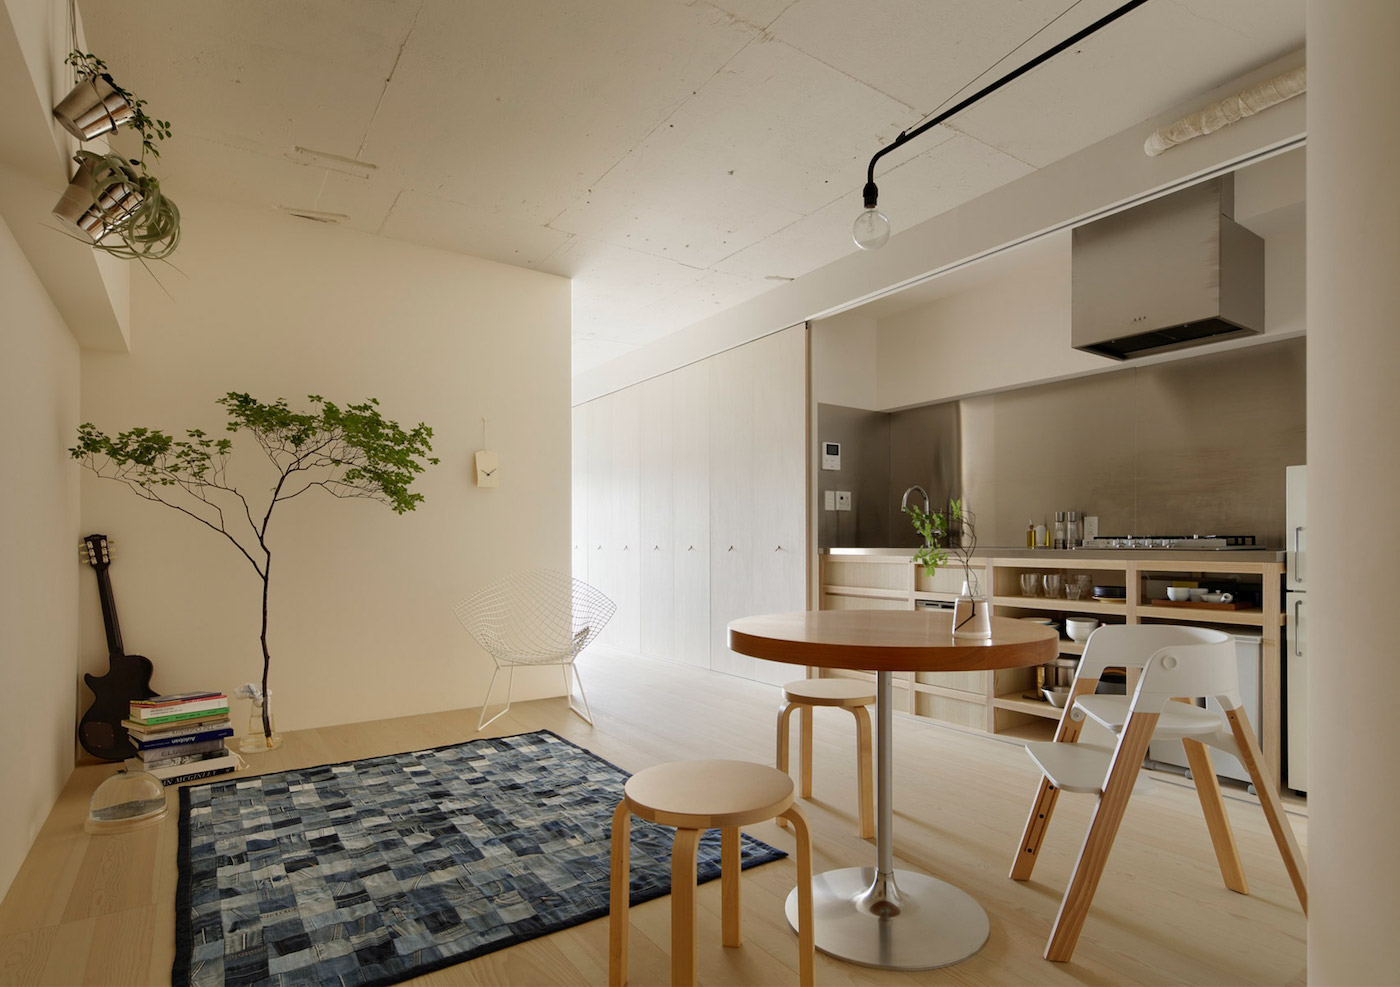 Apartment in Kitasando by Minorpoet